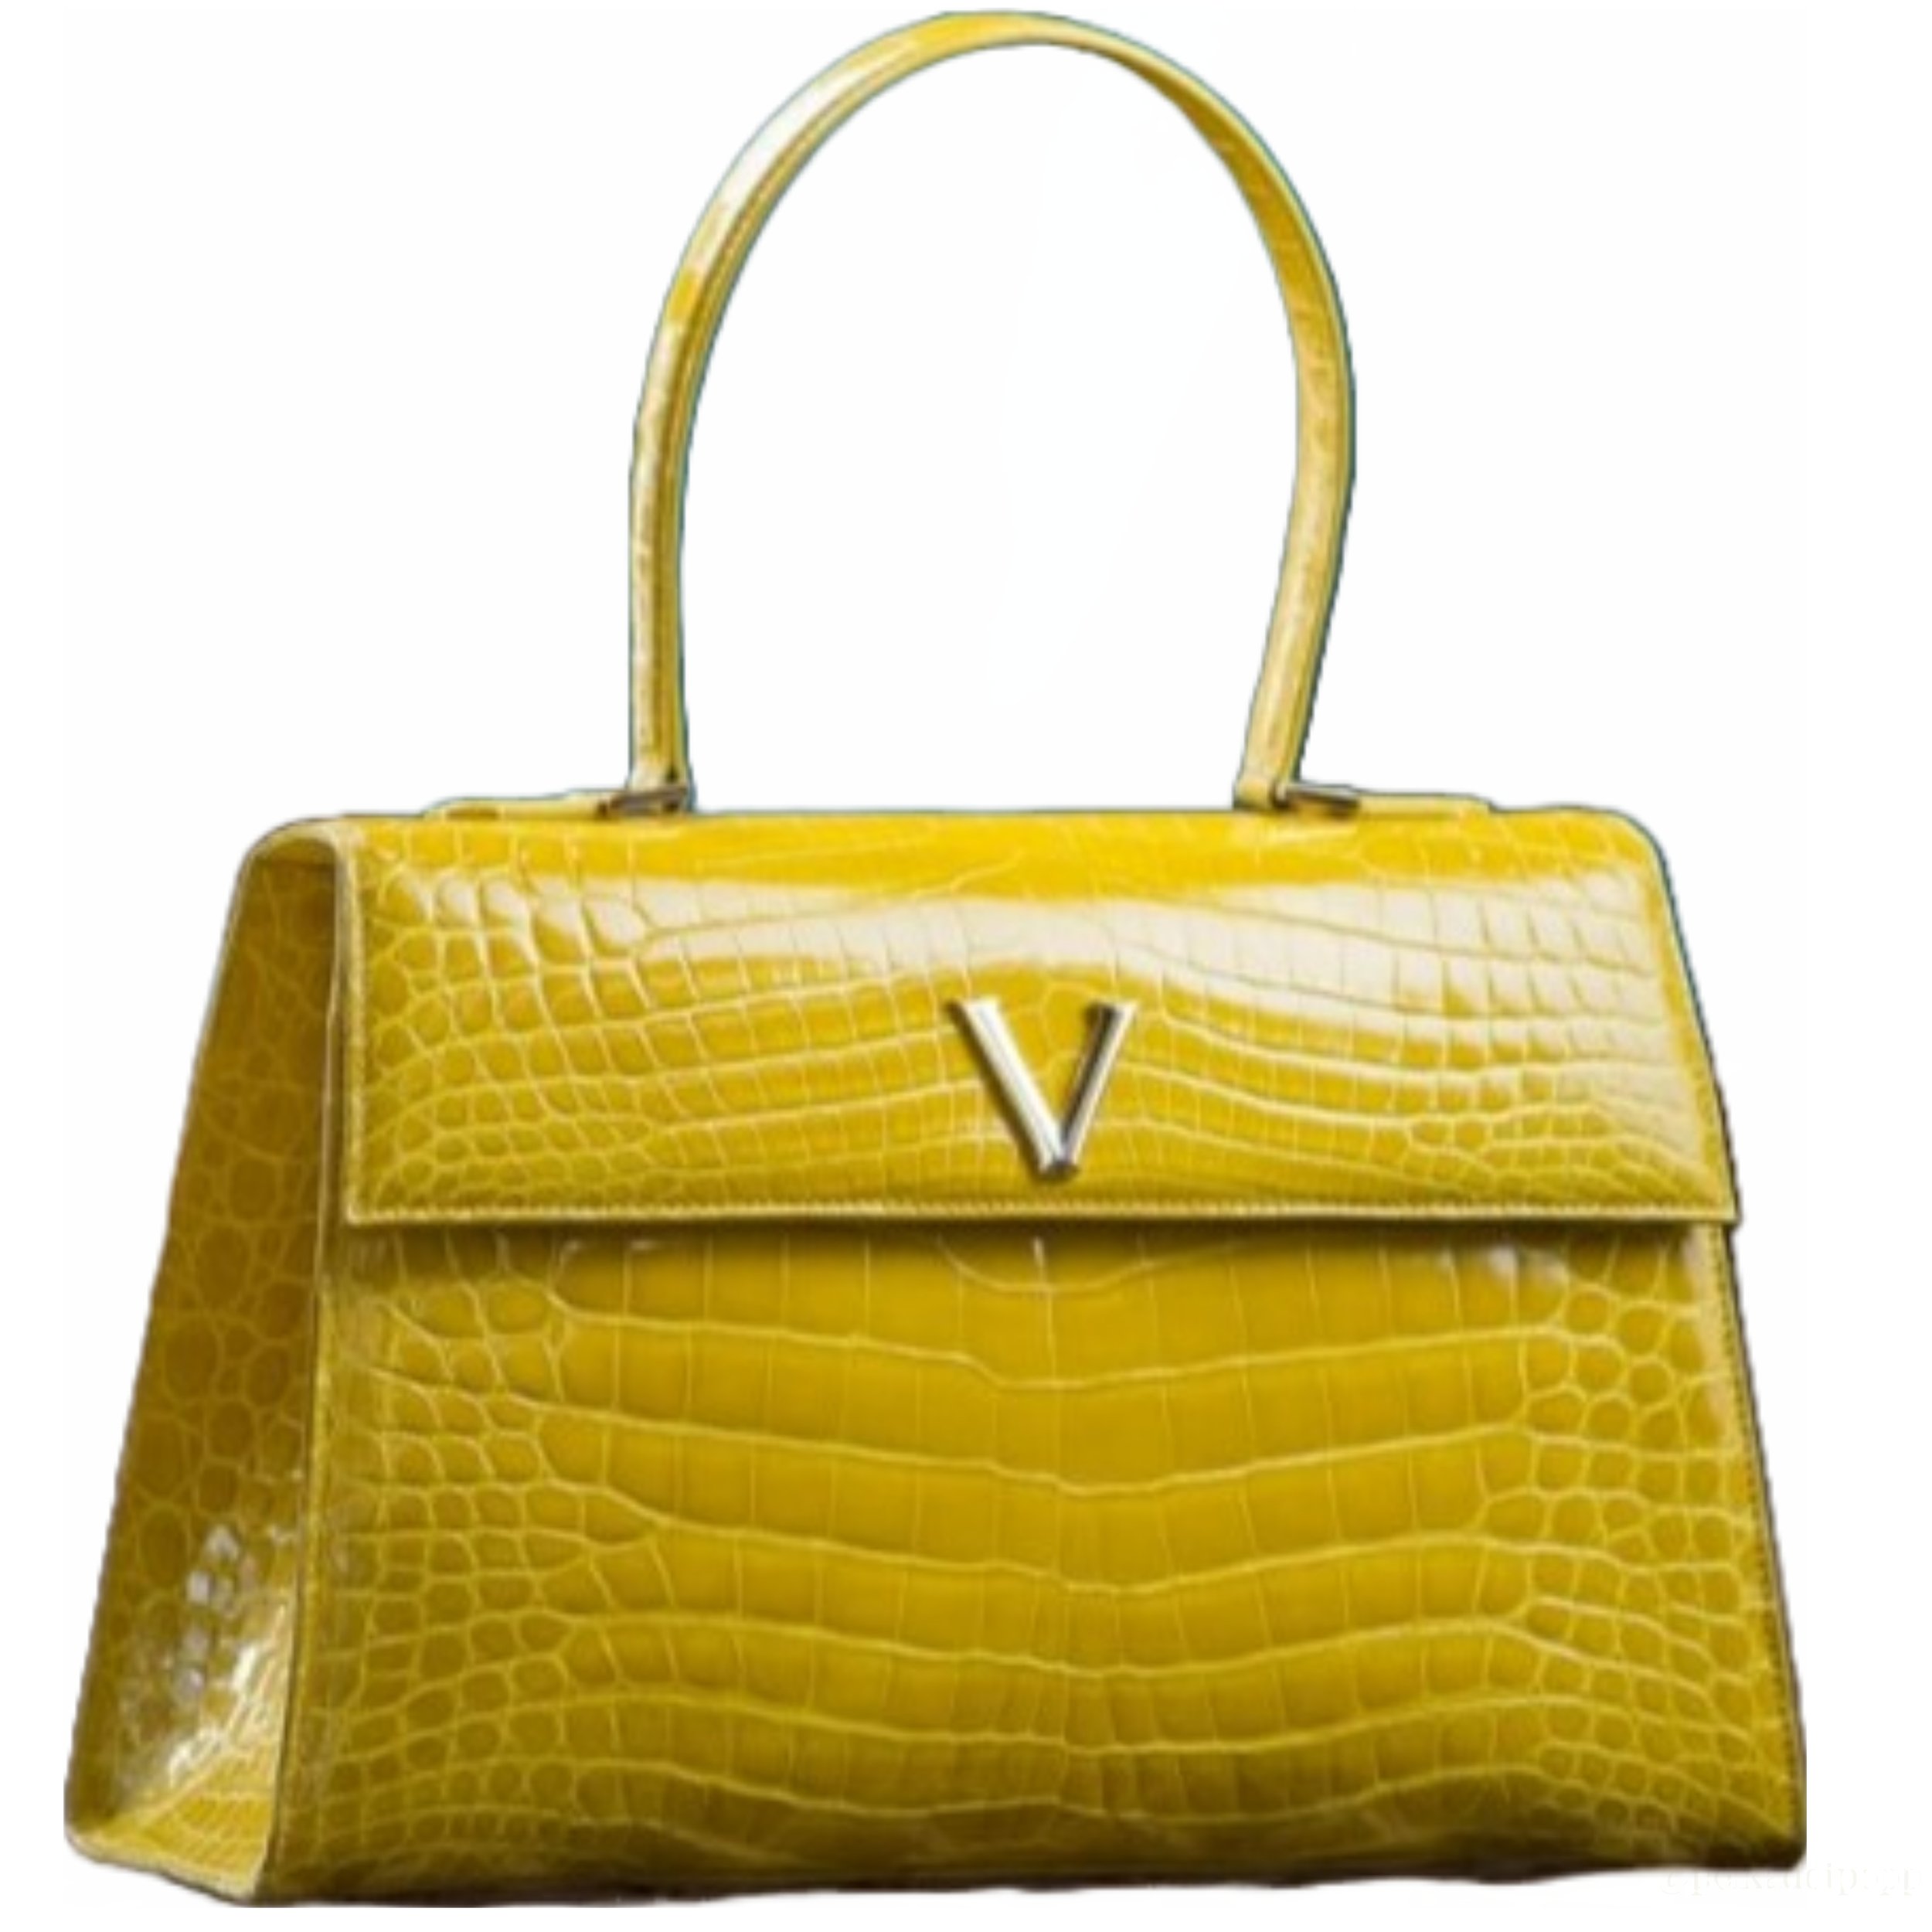 Vana V Top-Handle Bag in Yellow.jpg